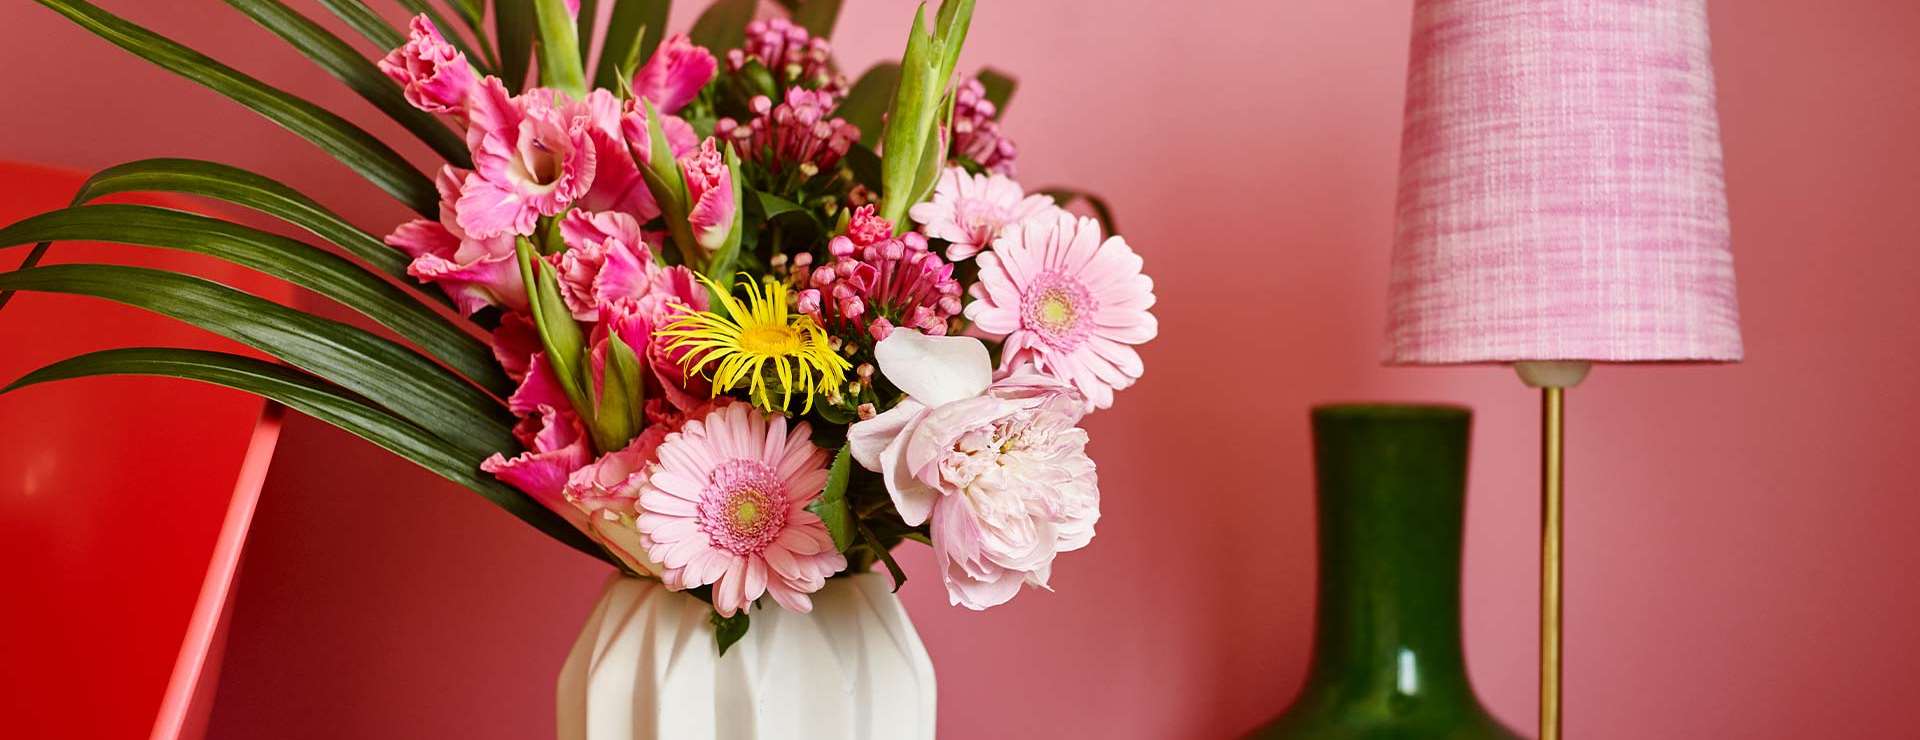 Blomster, lampeskjerm og vegg i årets farge 2016 - rosa